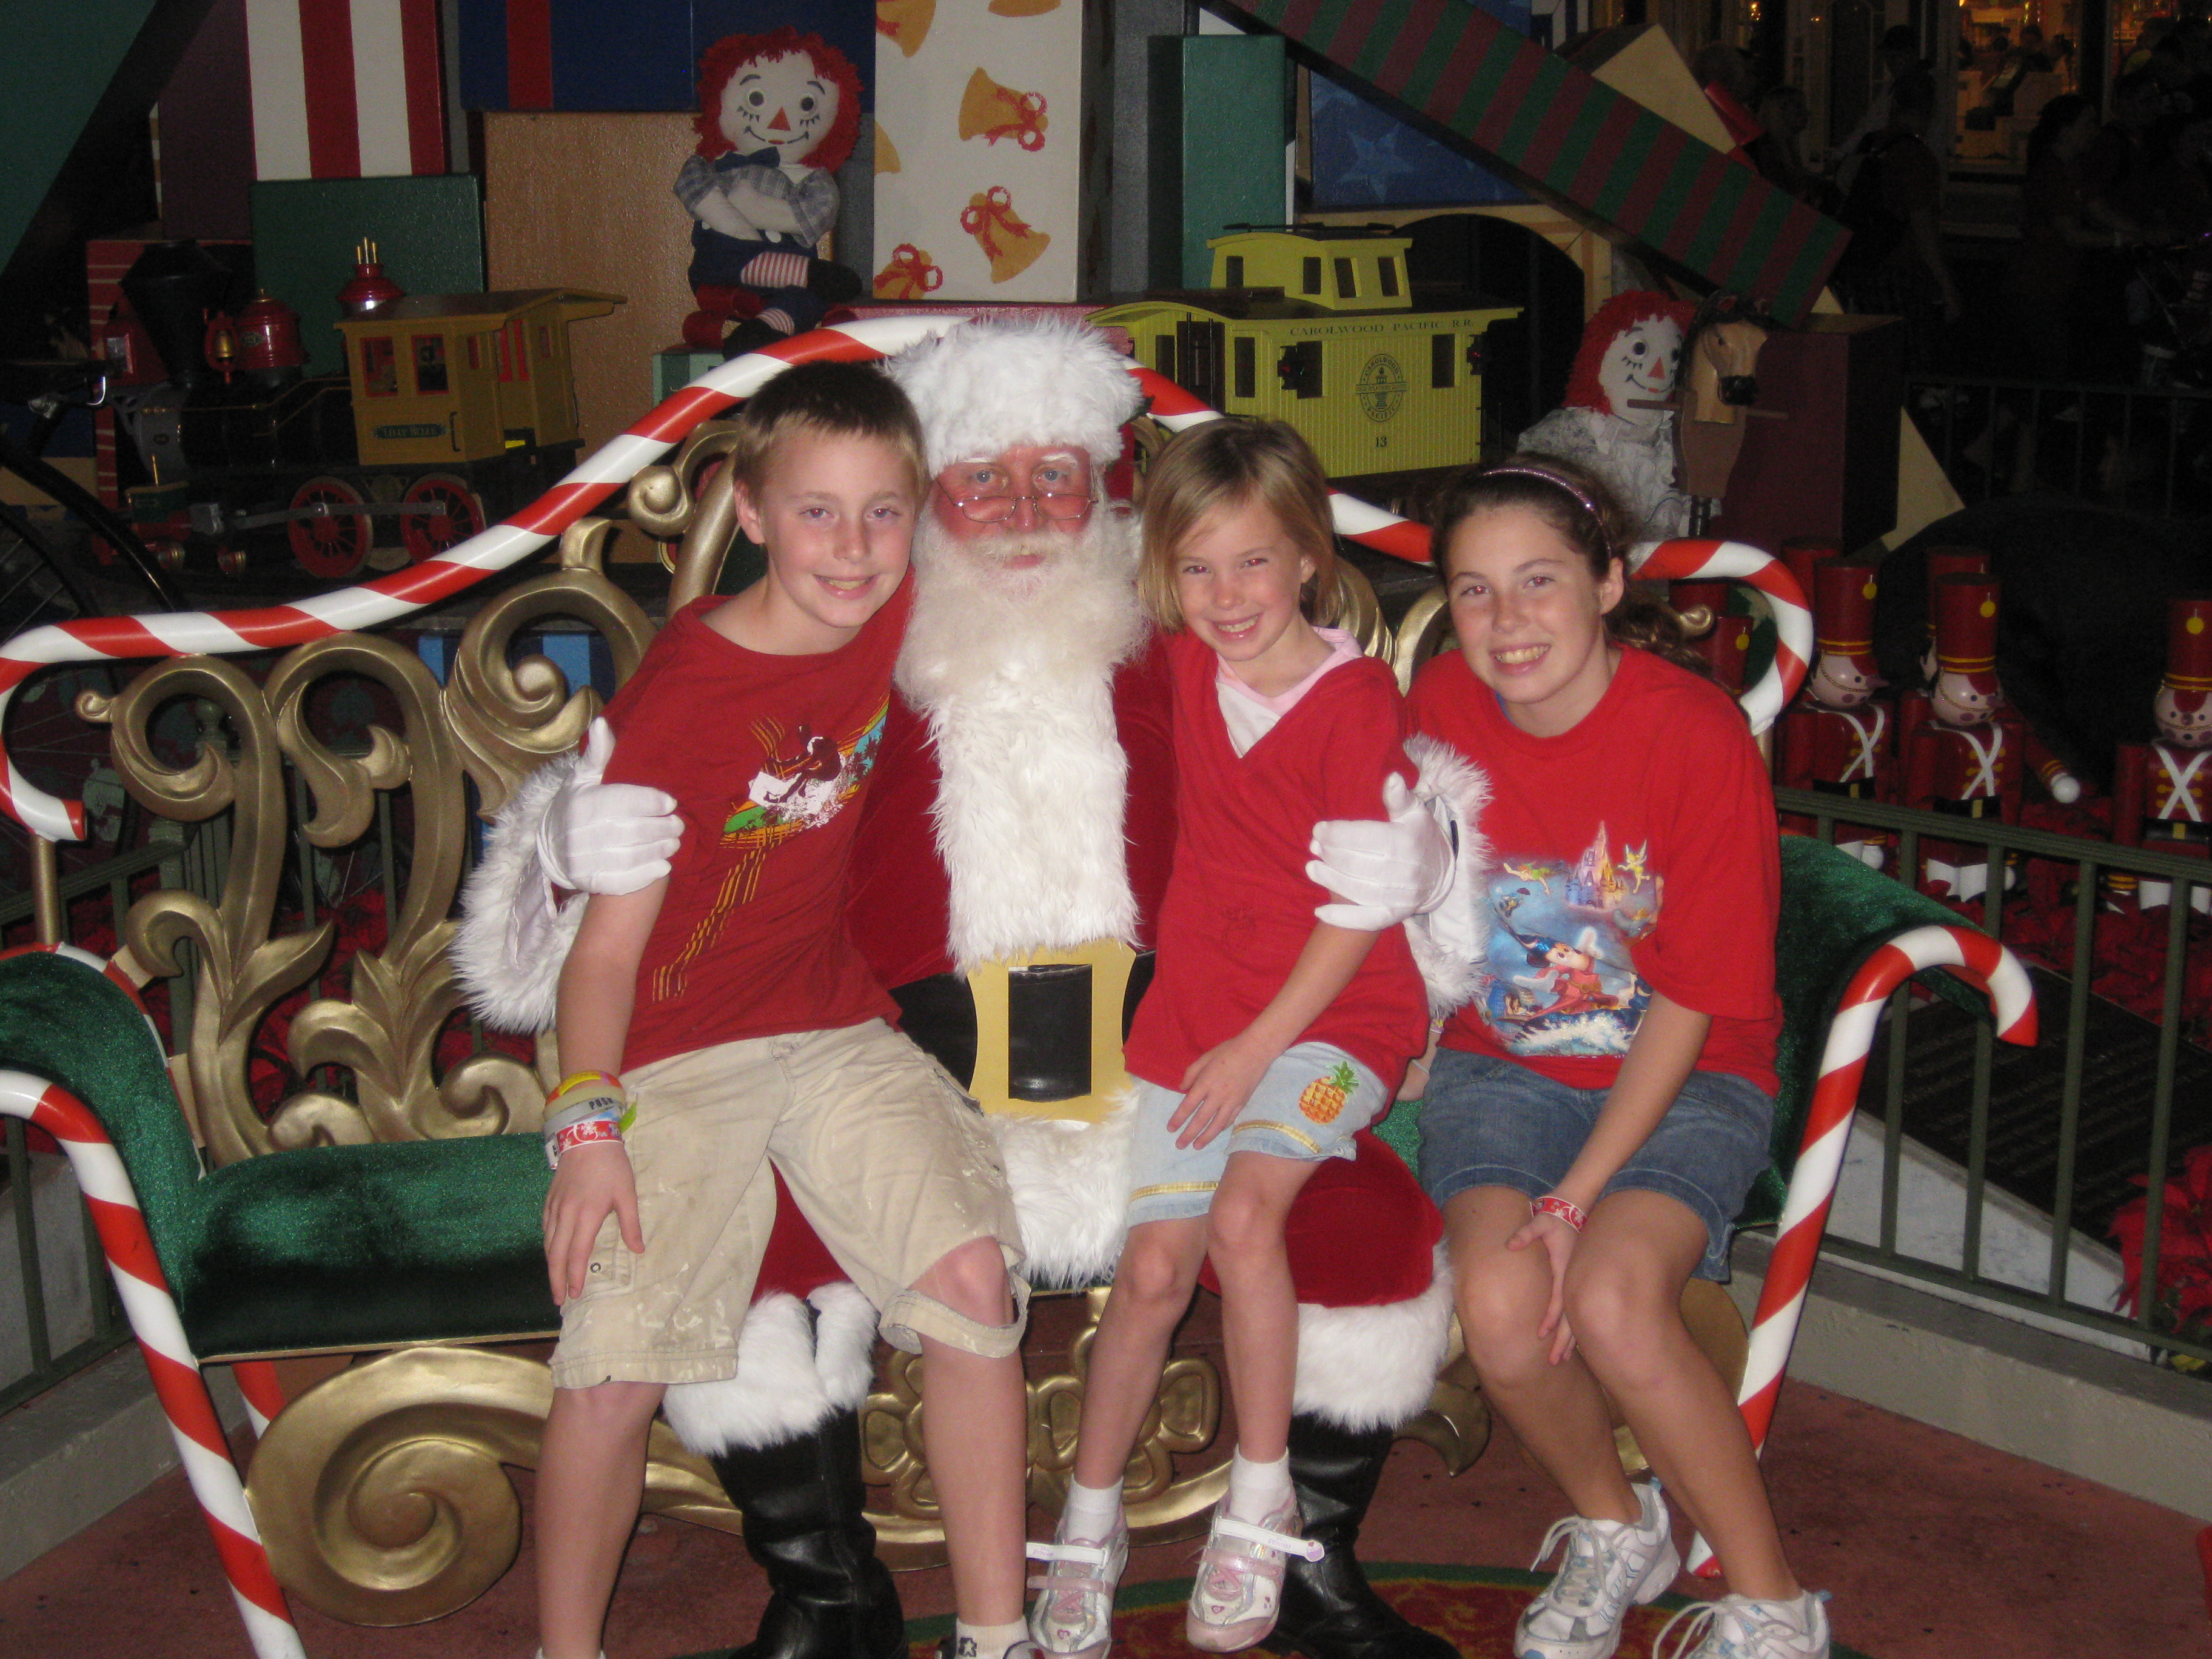 We met Santa in the Magic Kingdom December 2009